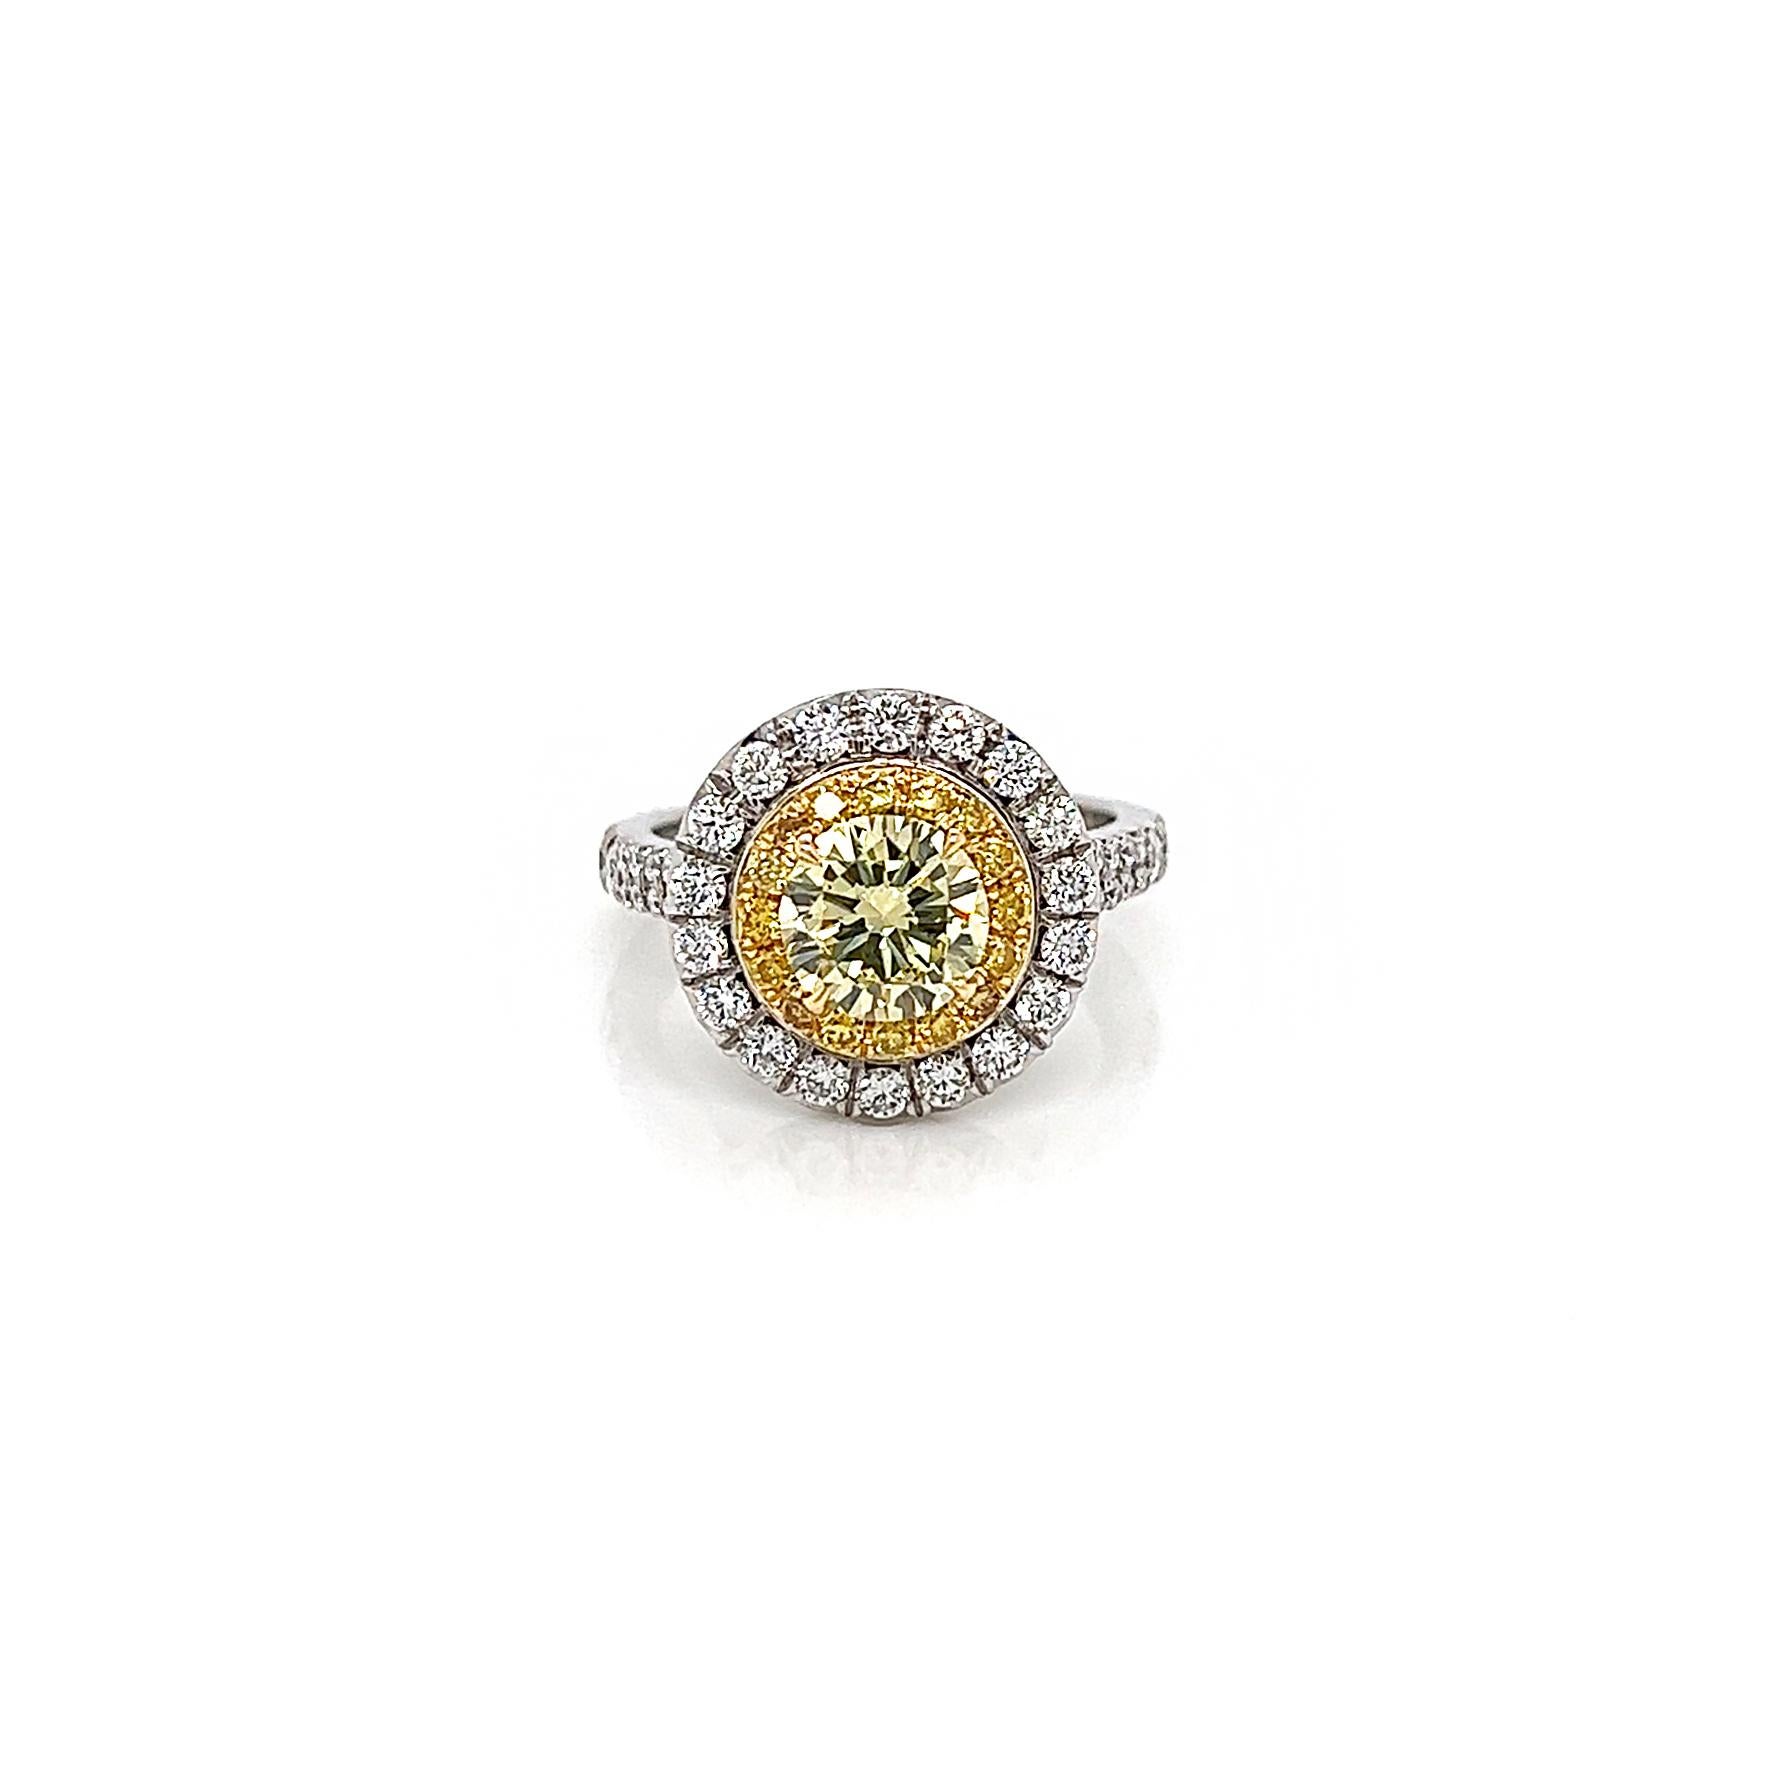 2.04 Total Carat Fancy Yellow Diamond Ladies Engagement Ring. Certifié par le GIA.

Cette bague double halo jaune fantaisie est notre bague 